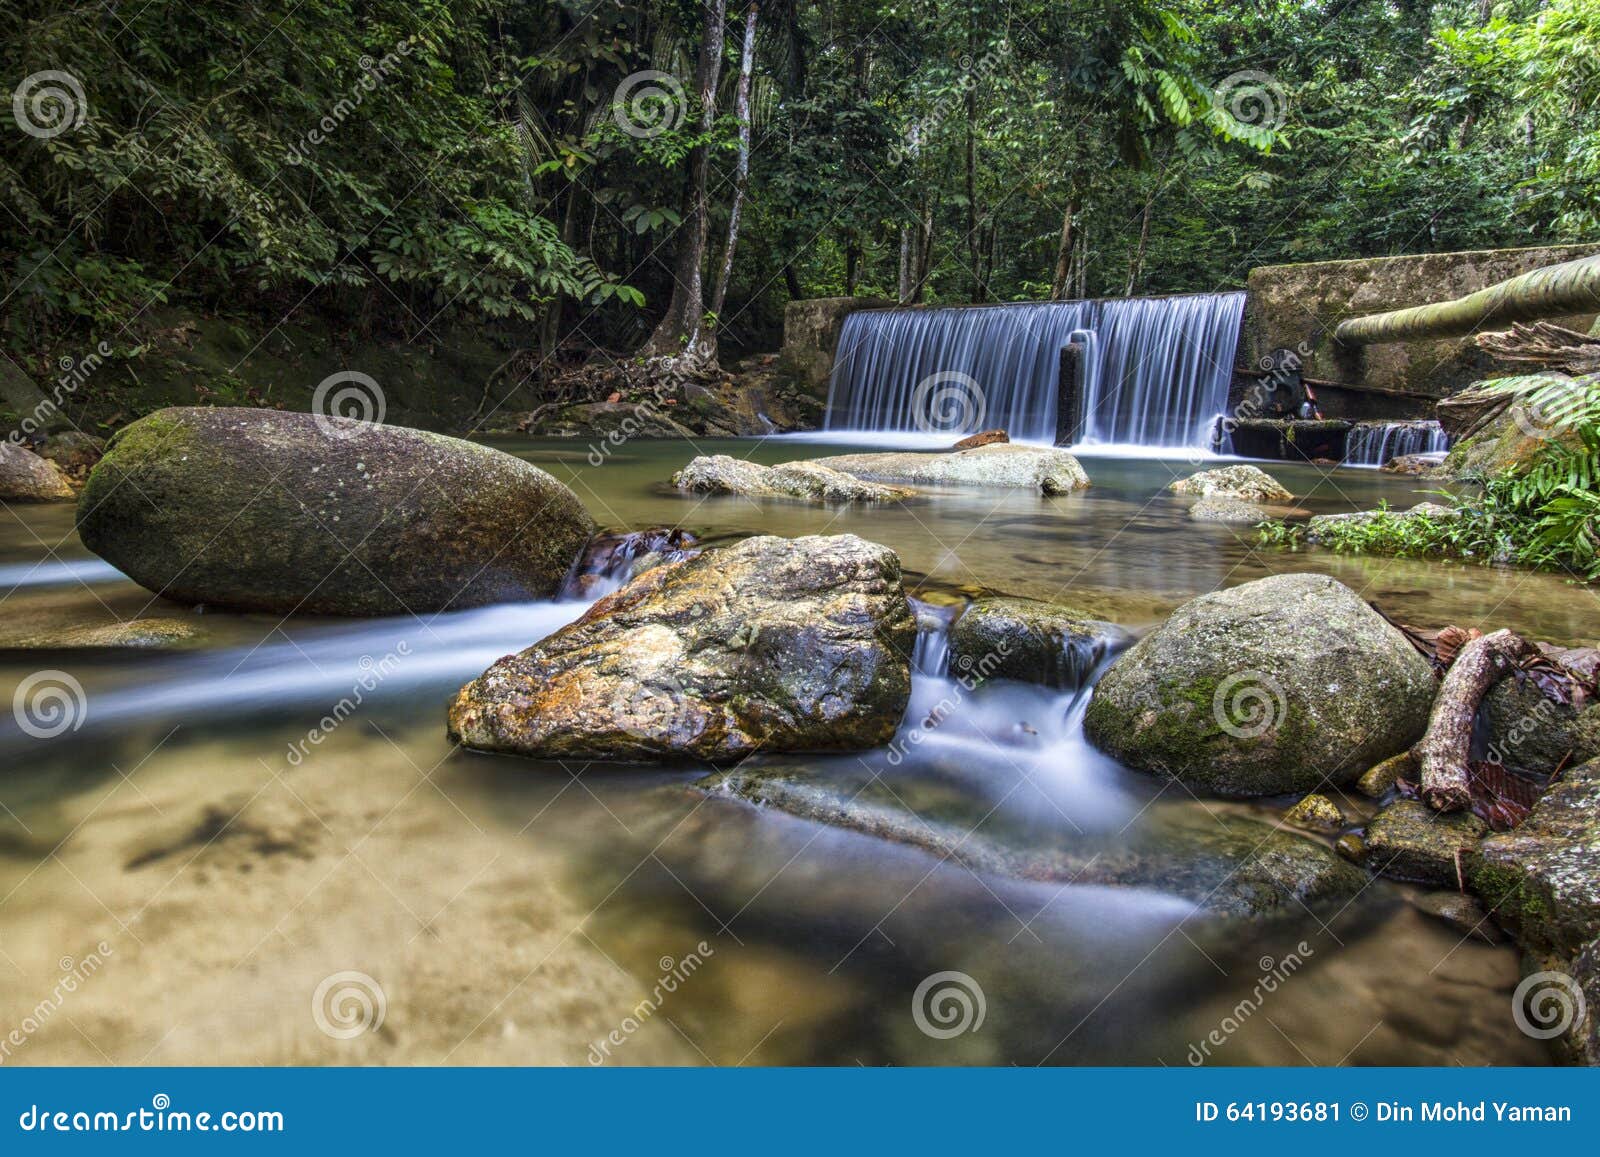 Ulu yam waterfall